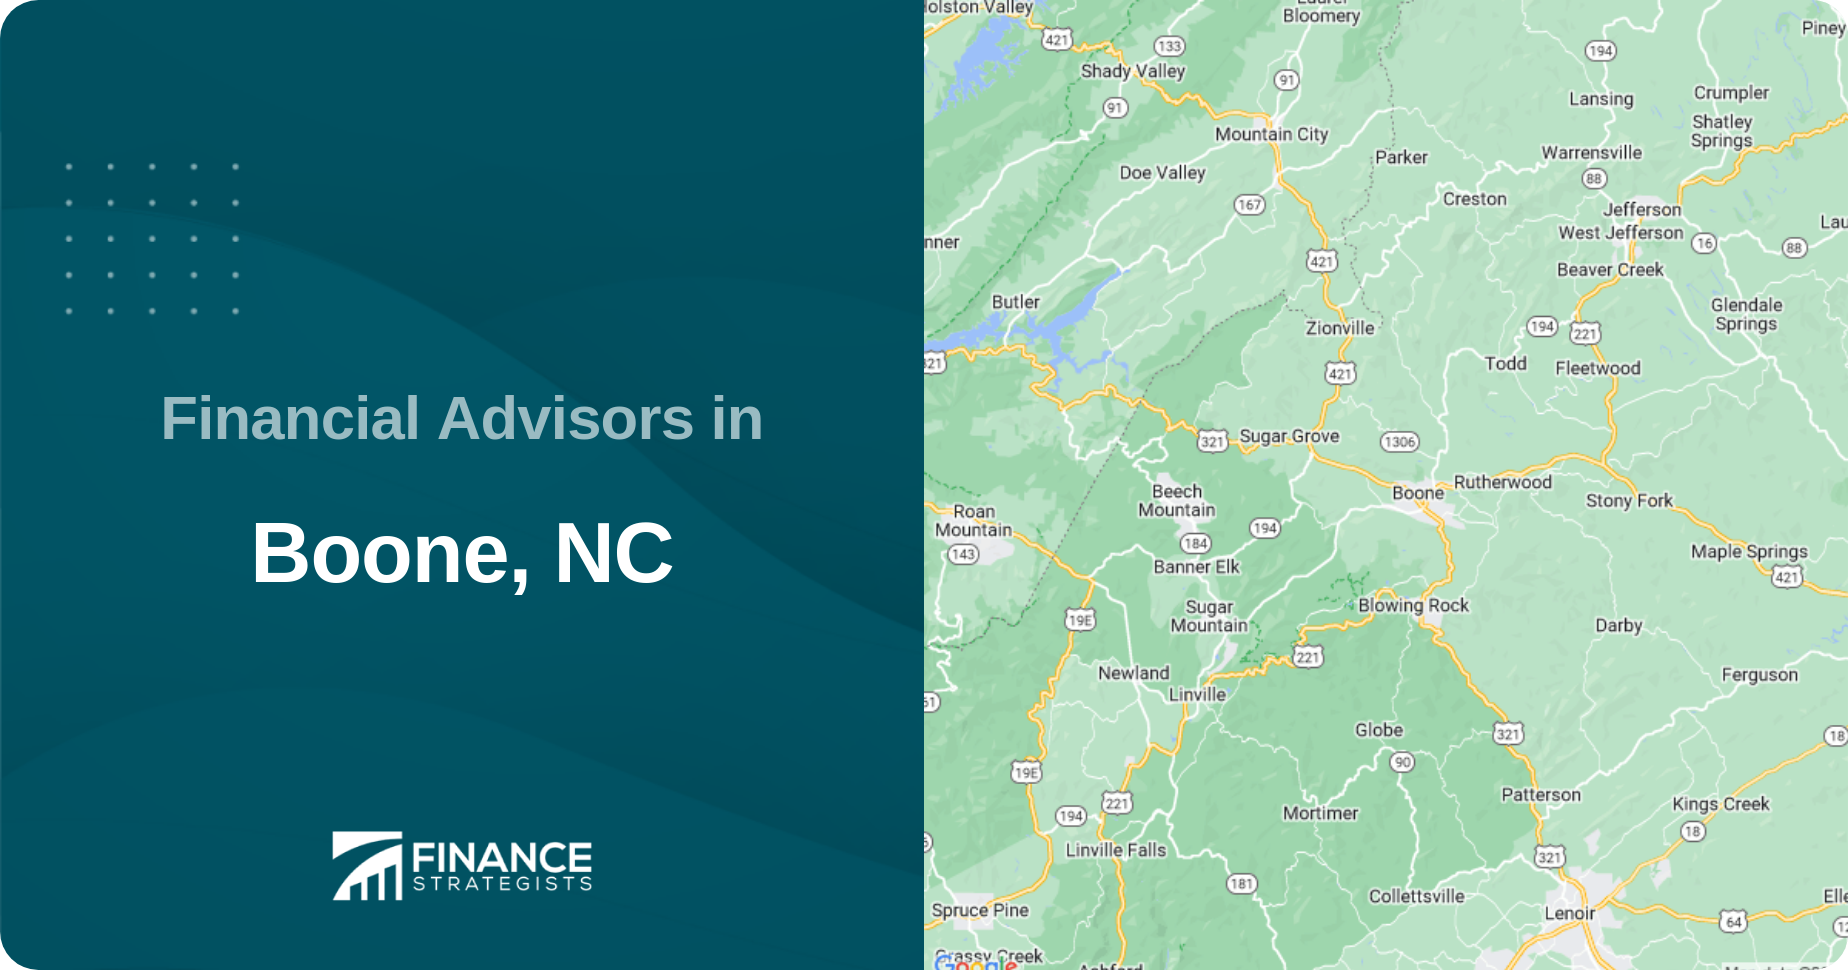 Financial Advisors in Boone, NC